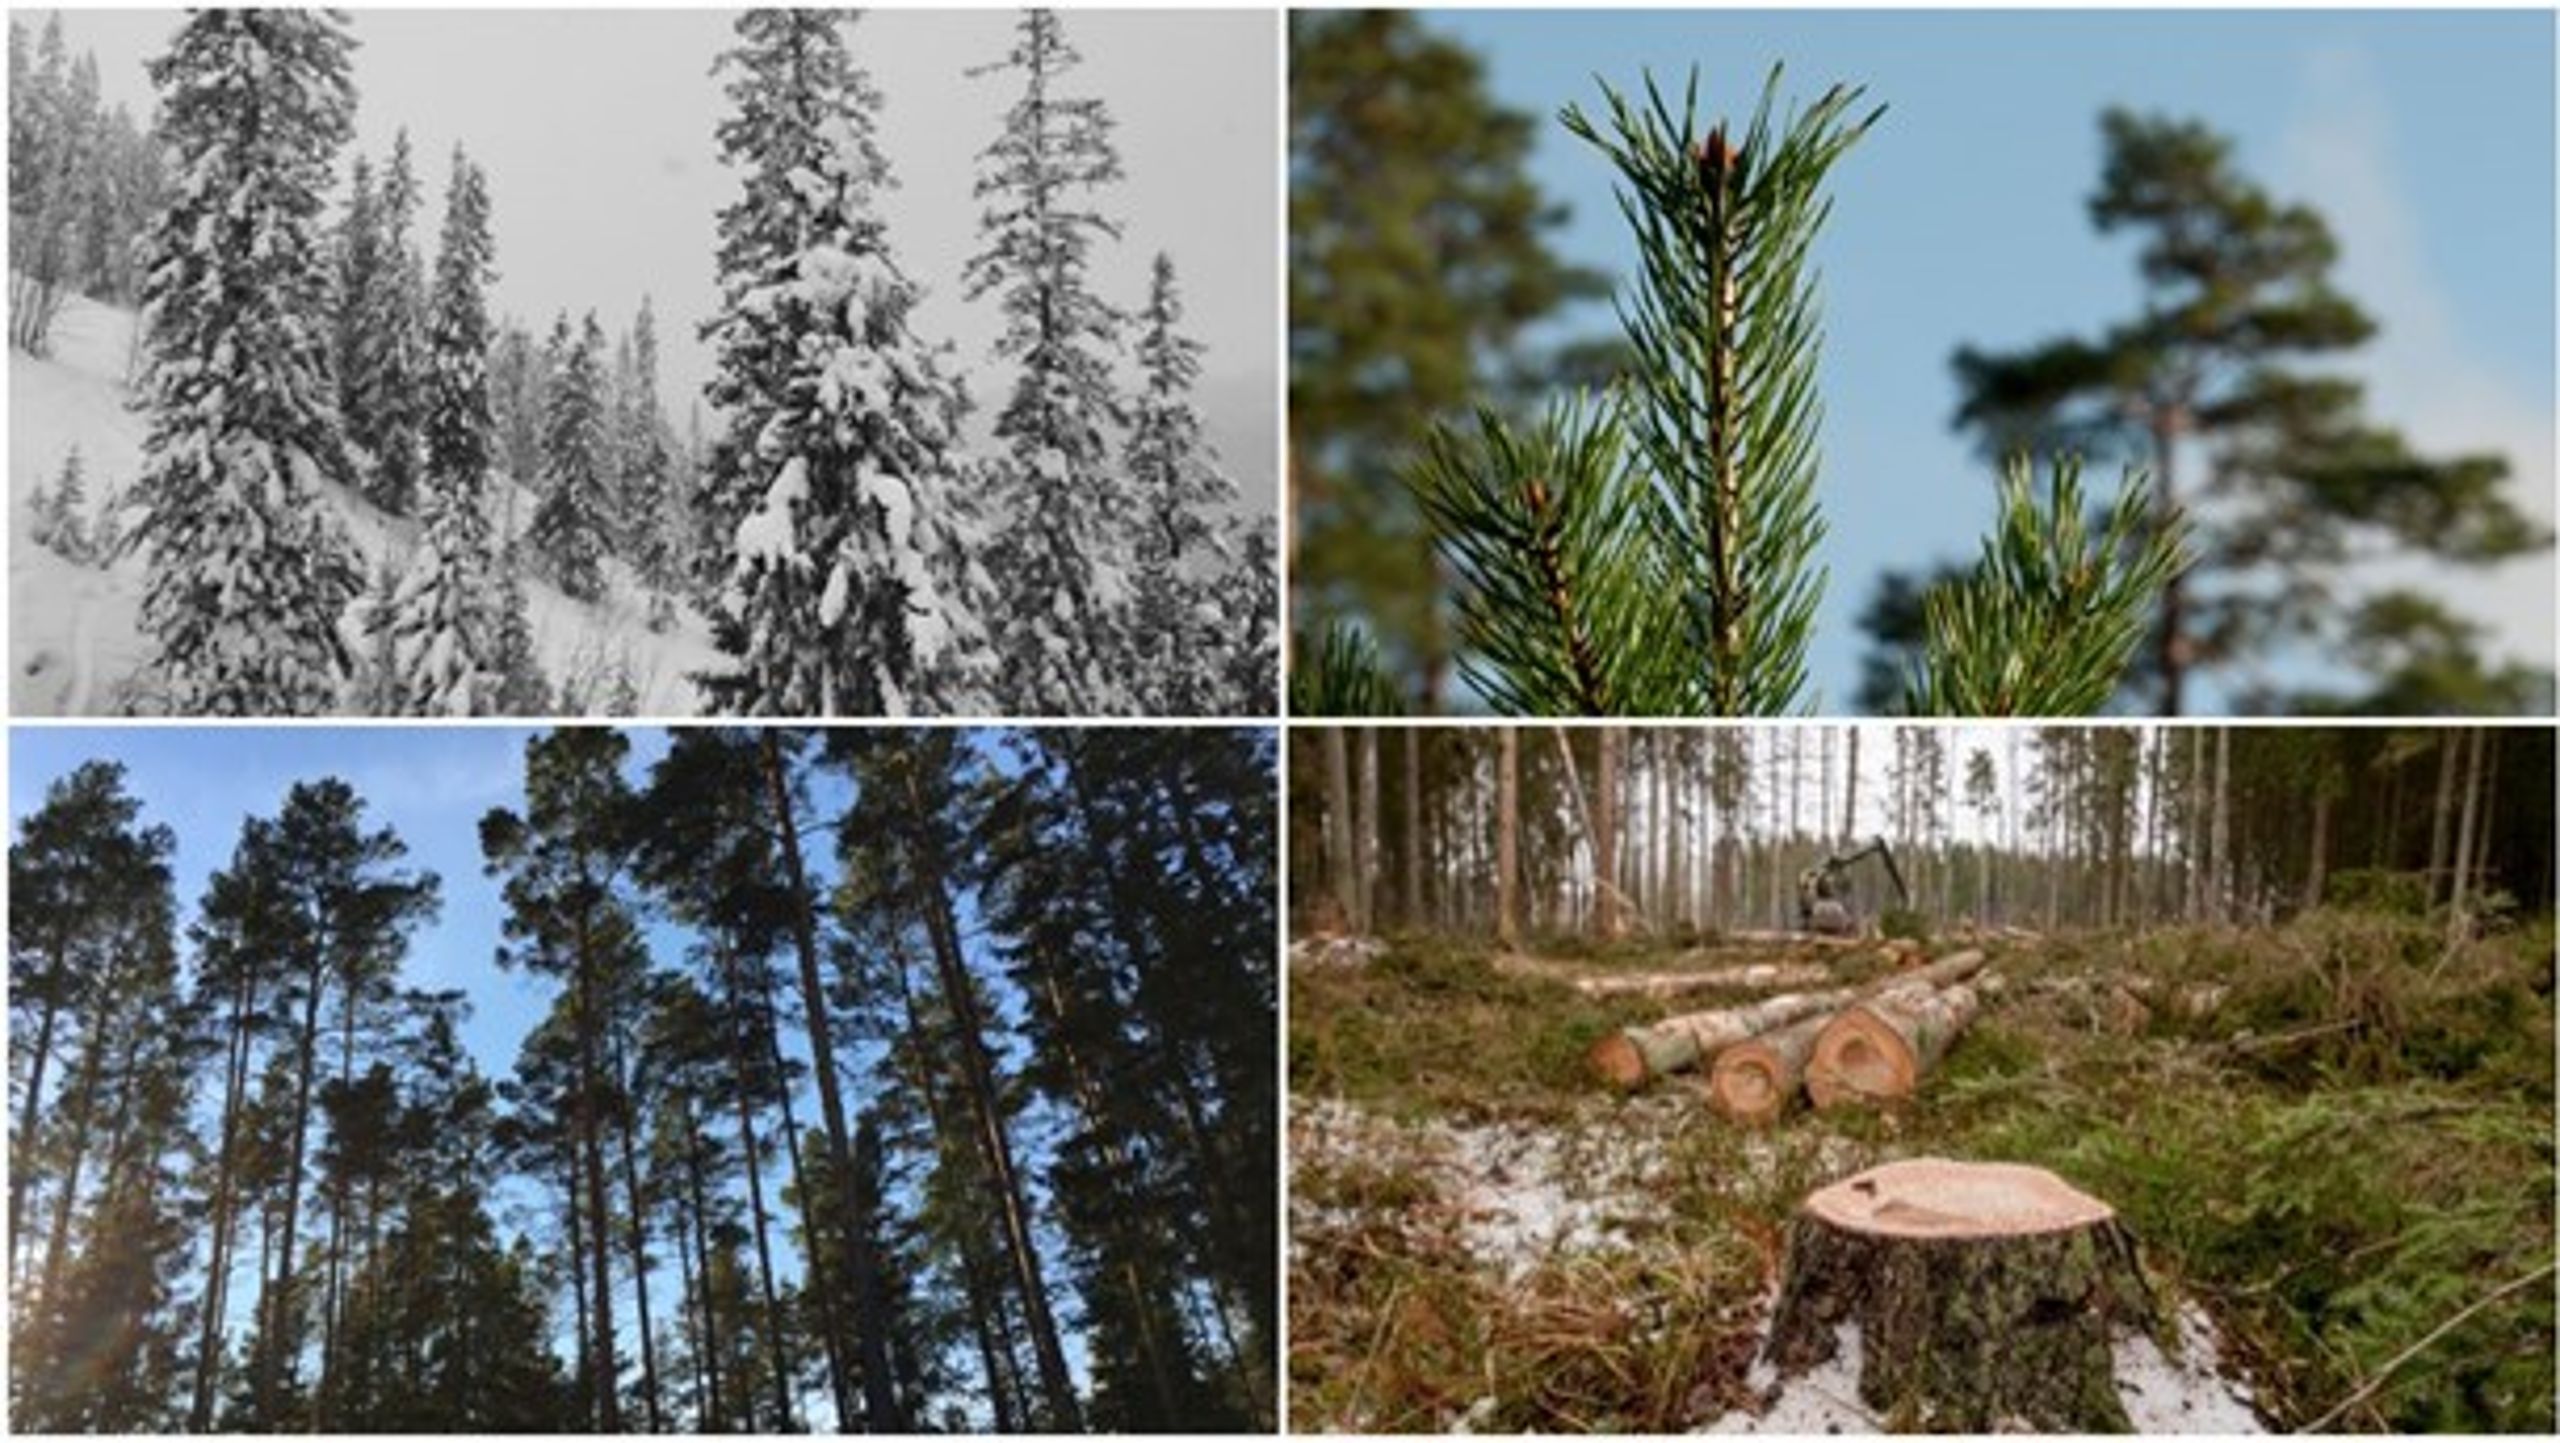 "Skogens företagsledare är väldigt tysta rörande de stora framtids- och de existentiella
frågorna. Undantaget är skogsnäringens roll för kollagring för där ser man en affärsmöjlighet."&nbsp;skriver Sten B Nilsson i sin omvärldsanalys för skogsnäringen.